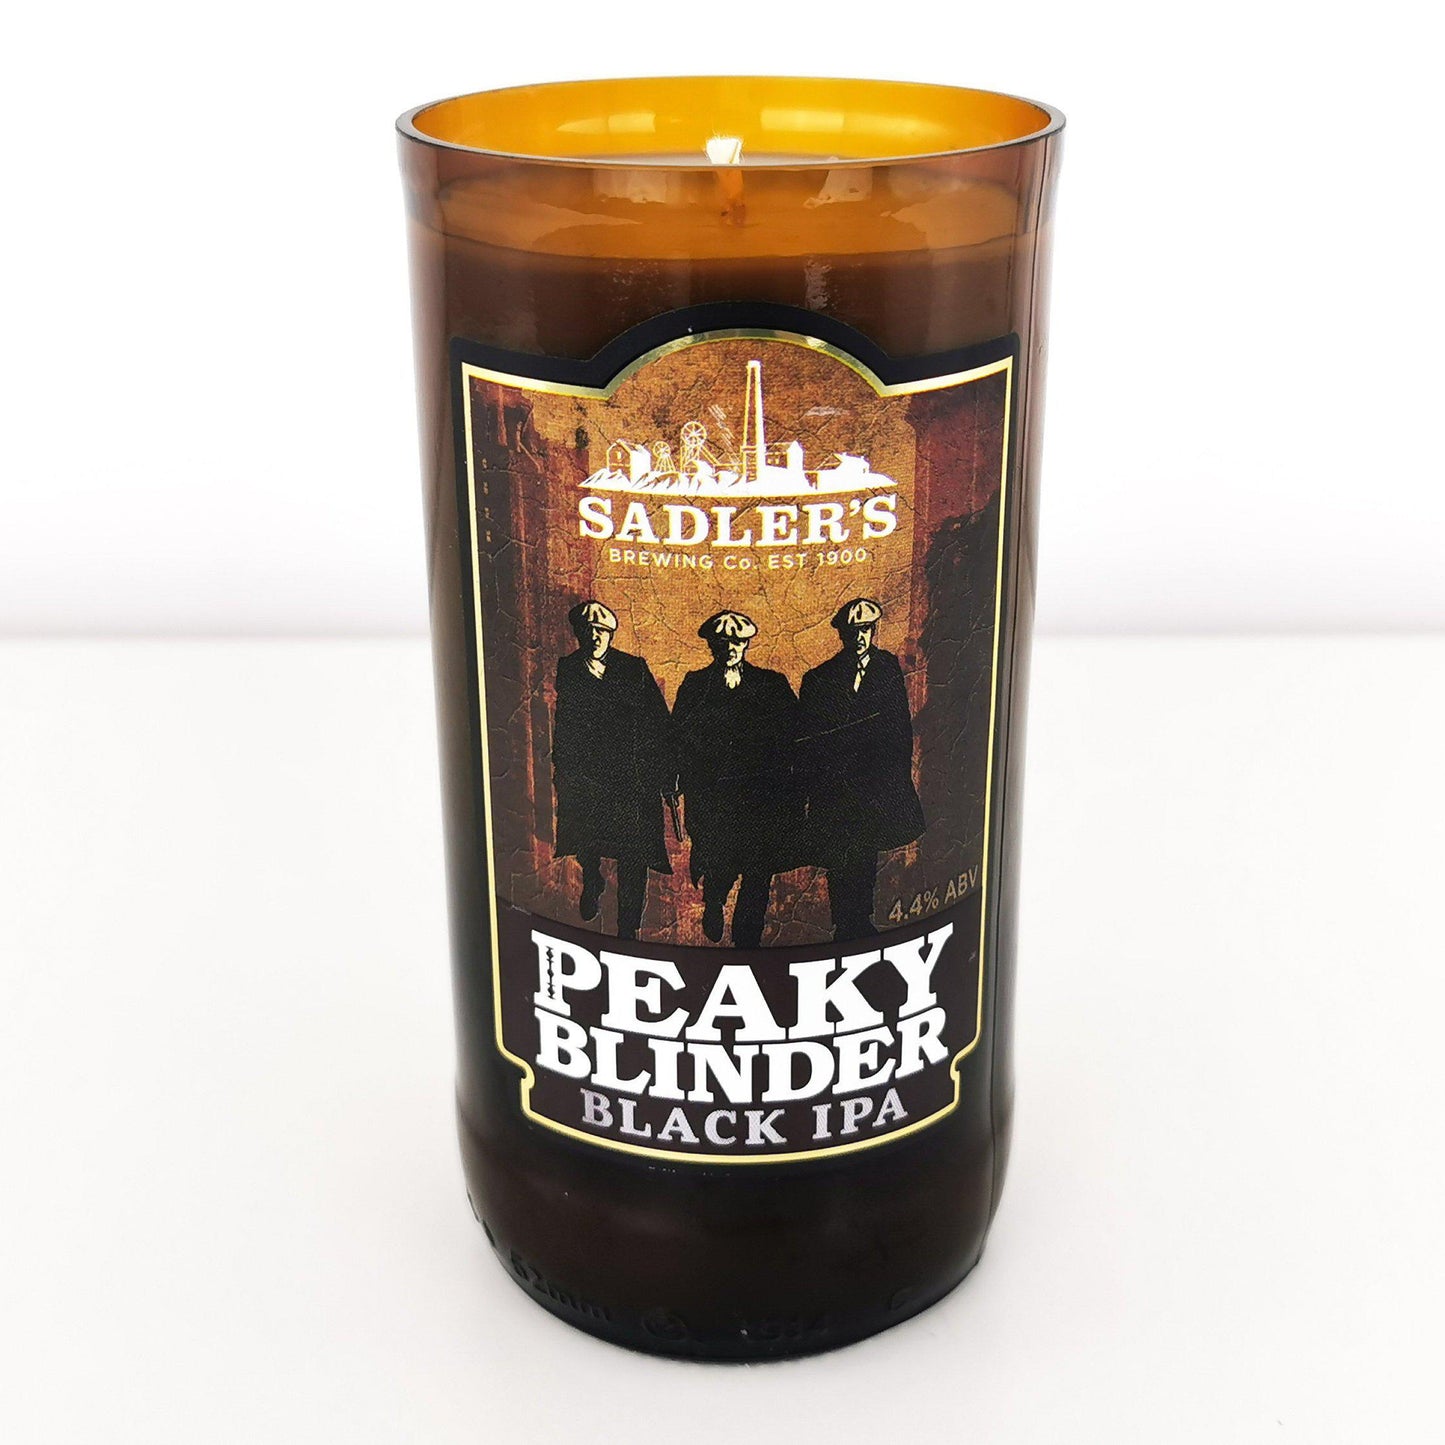 Peaky Blinder Black IPA Craft Beer Bottle Candle-Beer & Ale Bottle Candles-Adhock Homeware